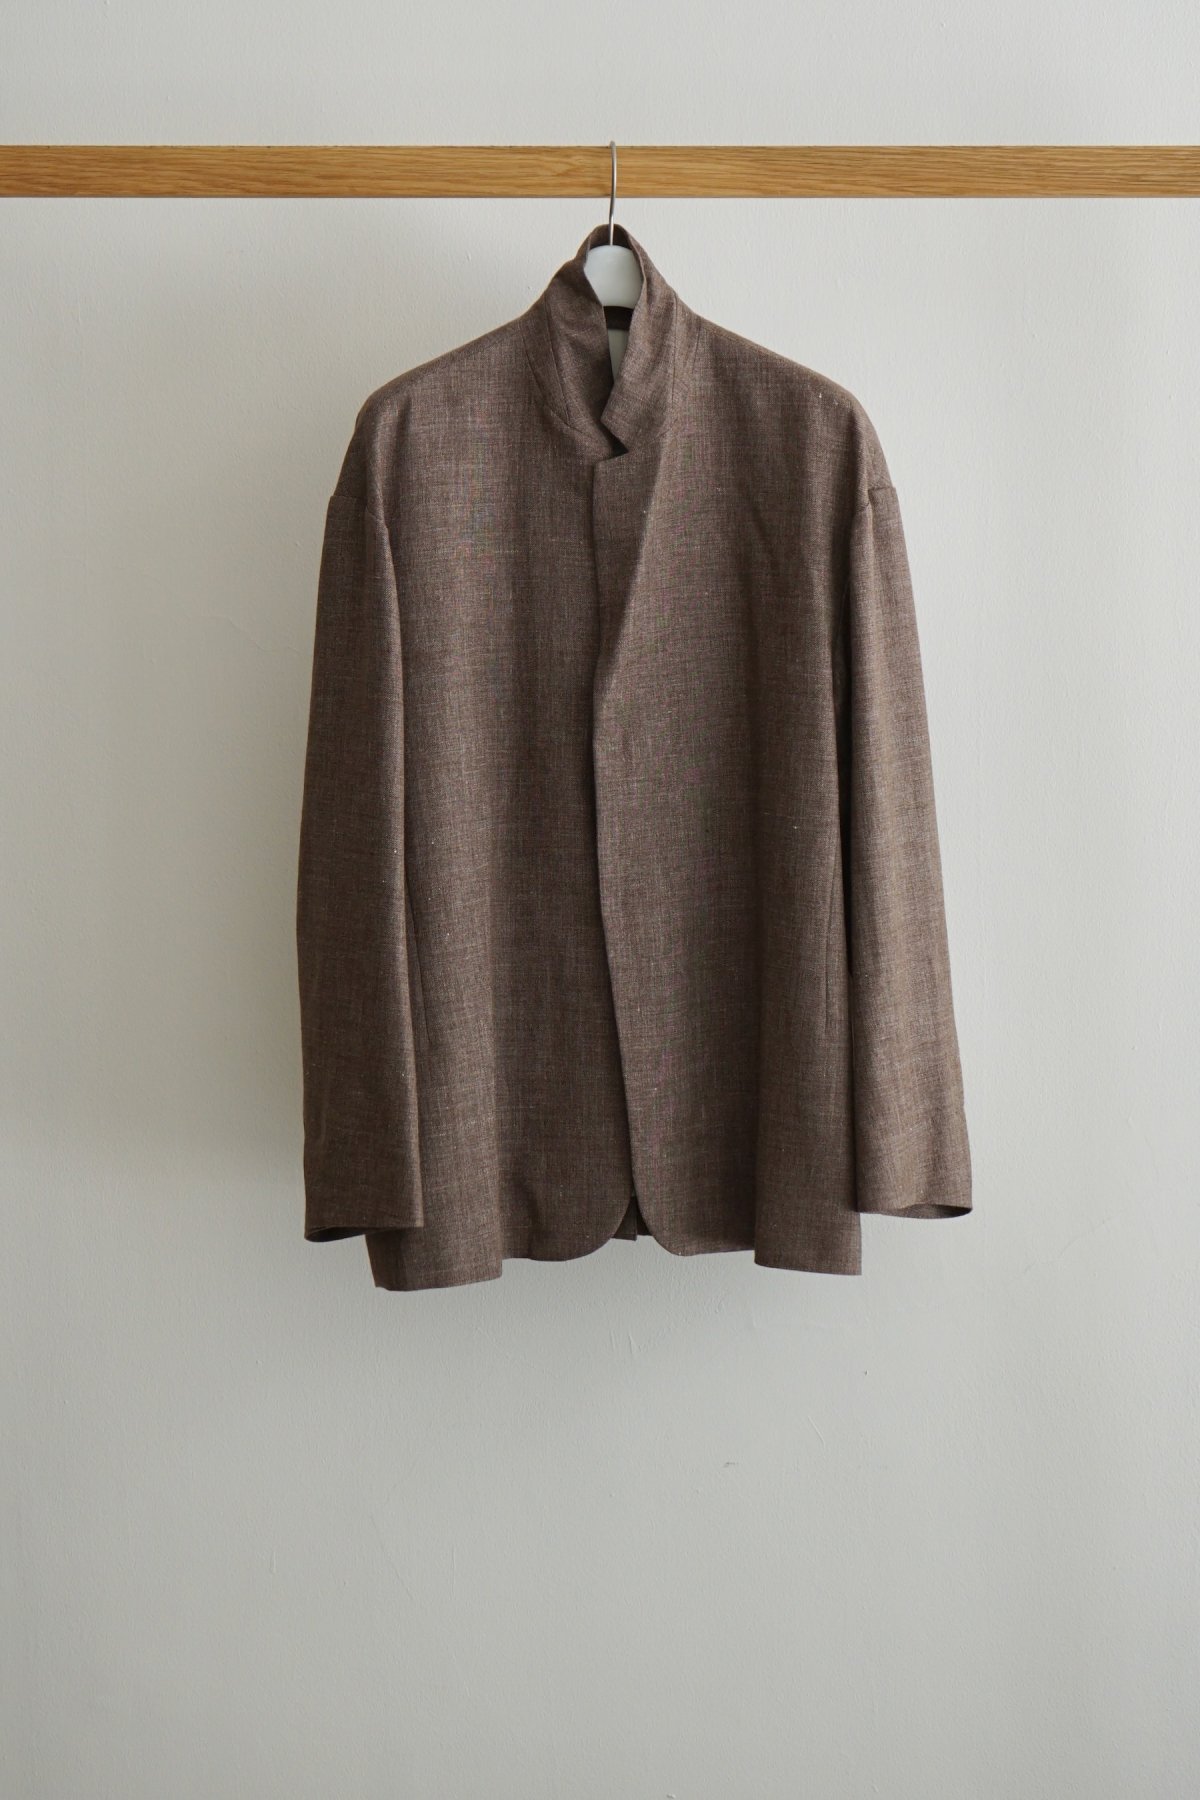 COSMIC WONDER / Linen wool sharkskin jacket / Brown